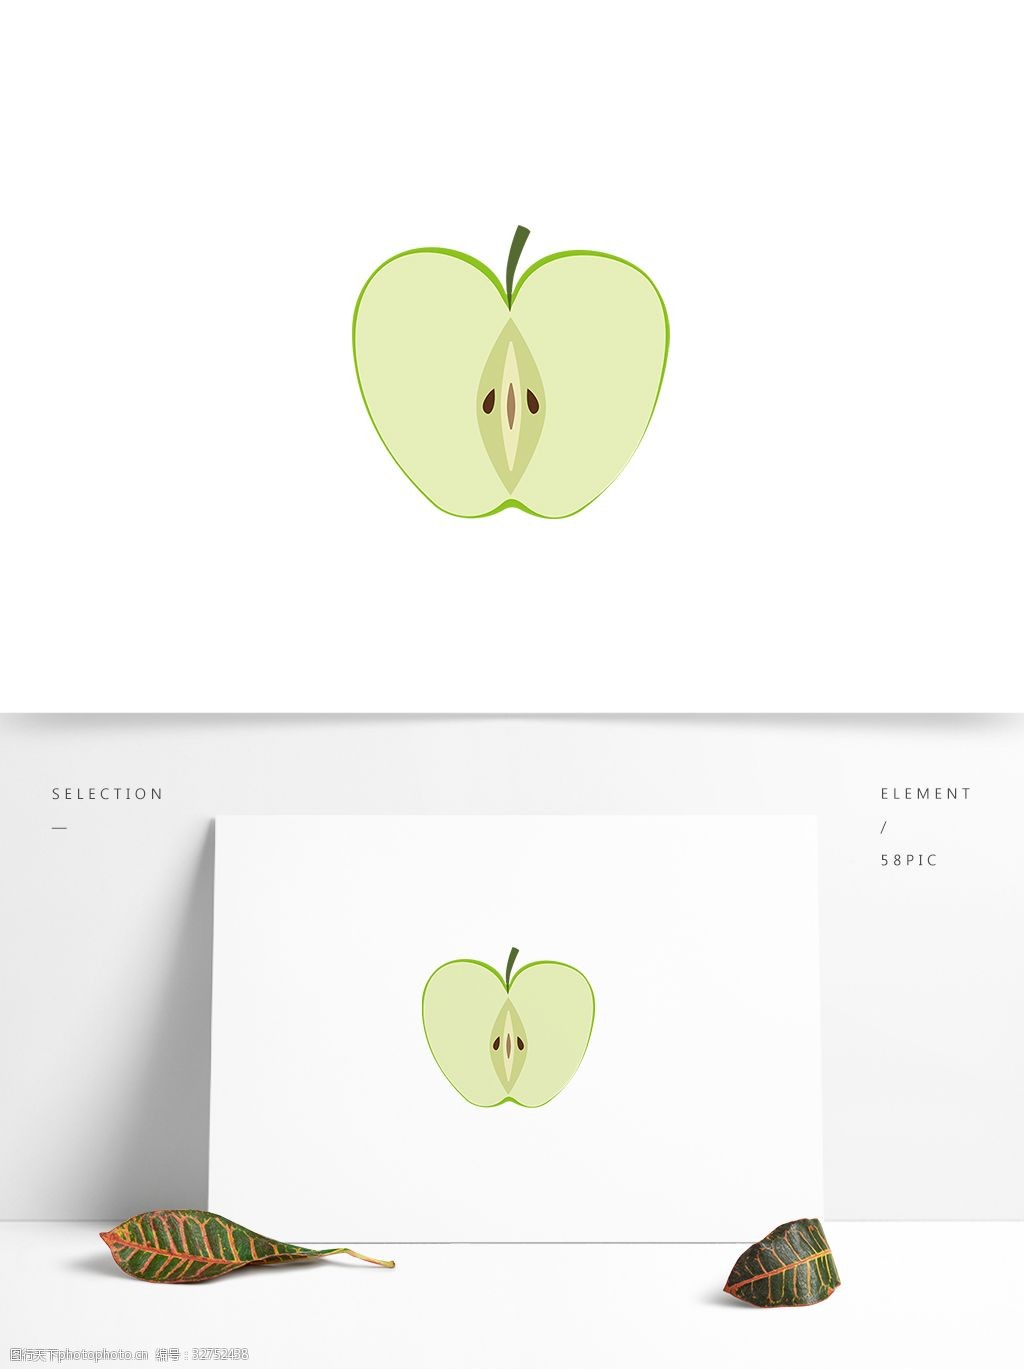 苹果横切纵切图片手绘图片